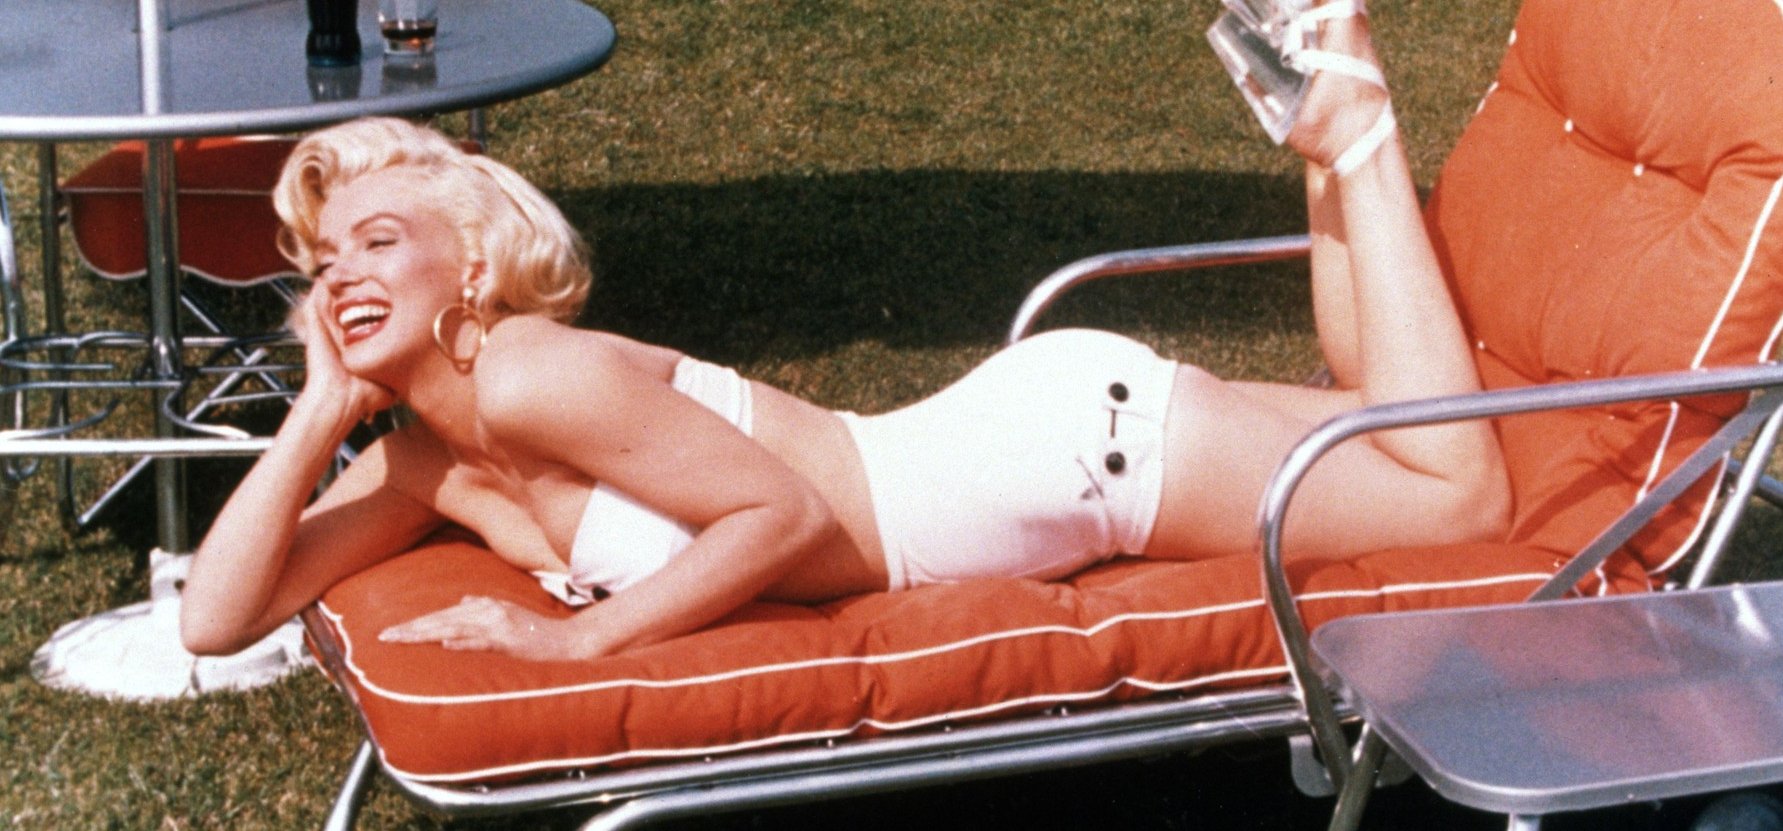 Ez is kiderült: Marilyn Monroe vette el A Keresztapa sztárjának szüzességét – a srác még csak 15 éves volt